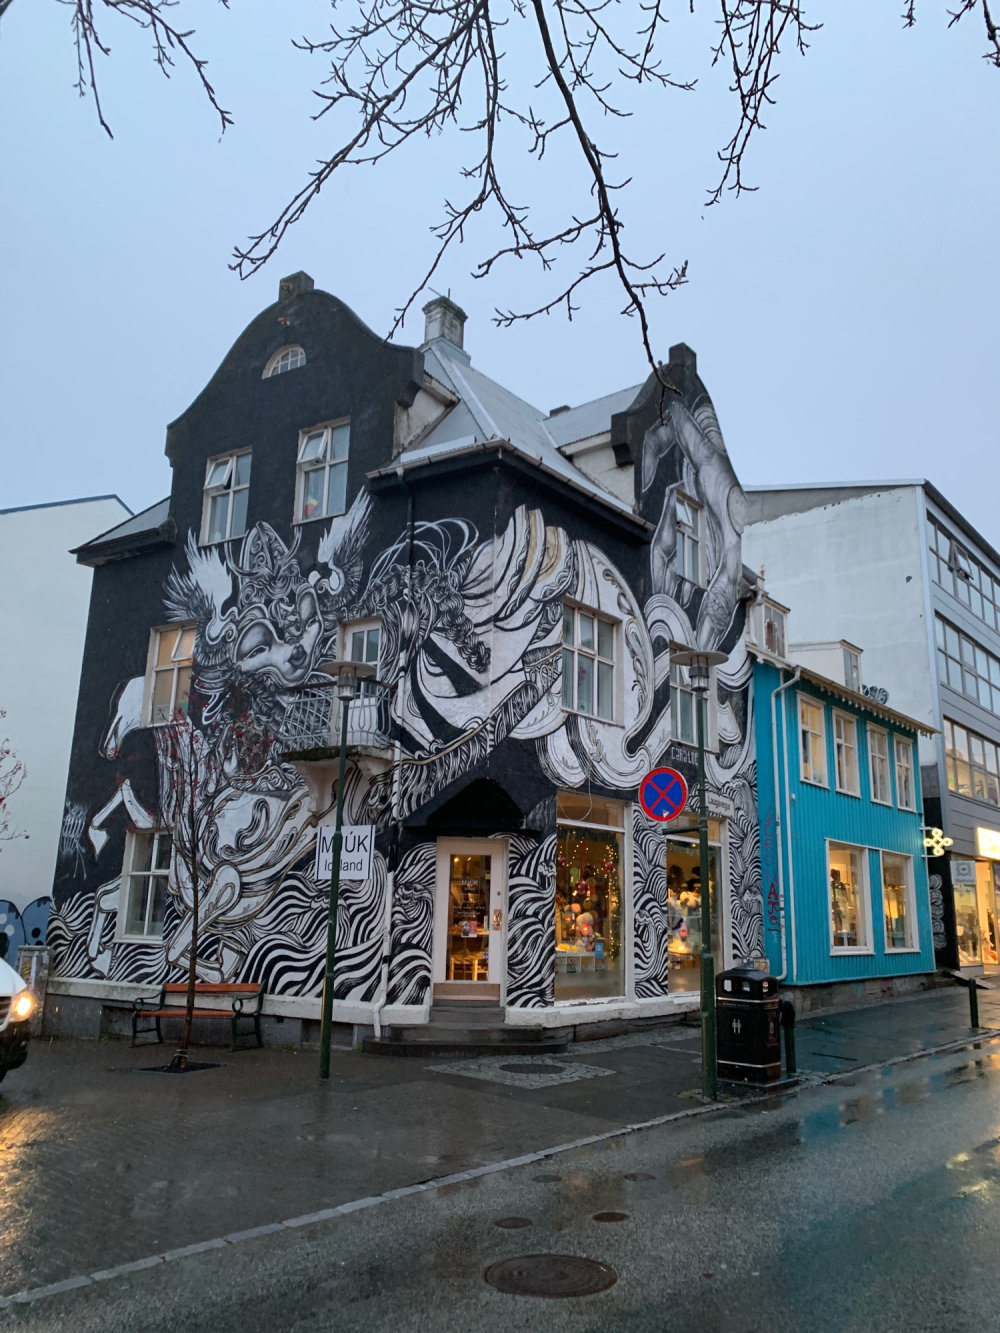 mural in Reykjavík by artist Caratoes.